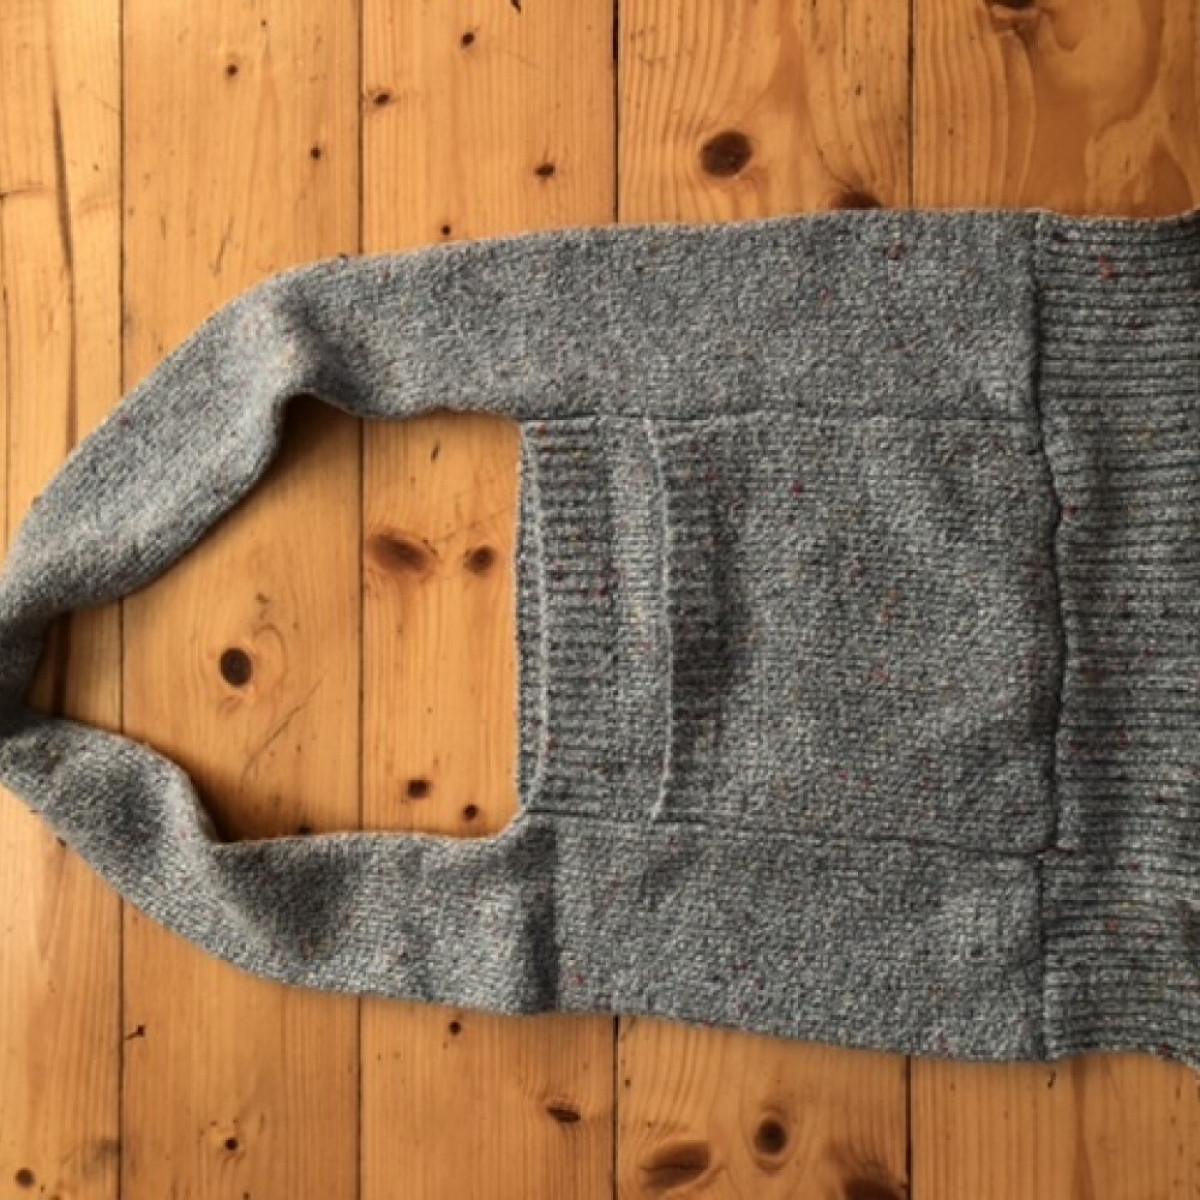 Stary sweter zamieniony w małą torebkę z wełny